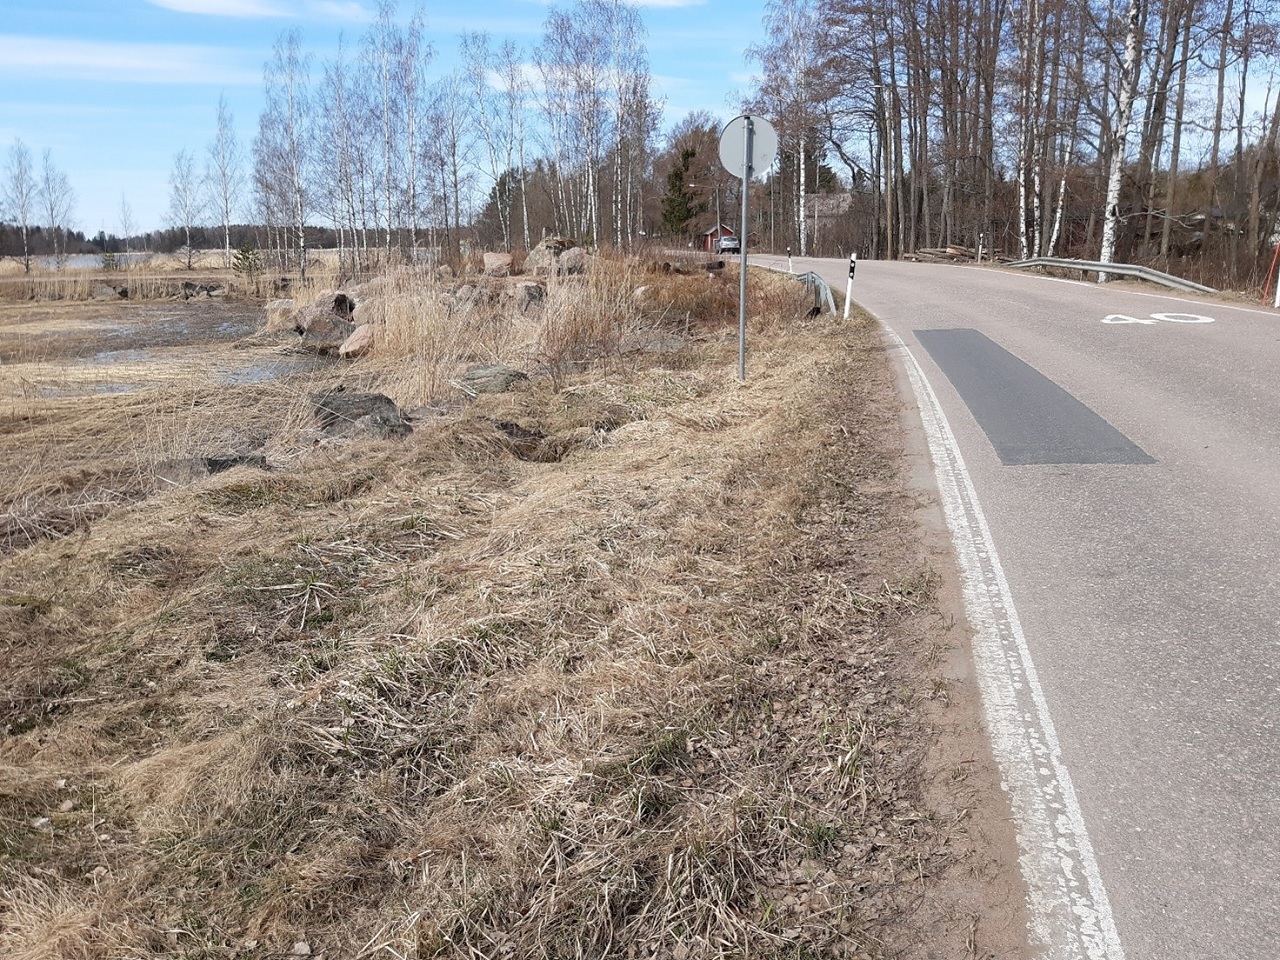 Suunniteltu jkpp-tie maanteille 3501 ja 14535 Purolan kohdalle Pyhtäälle.